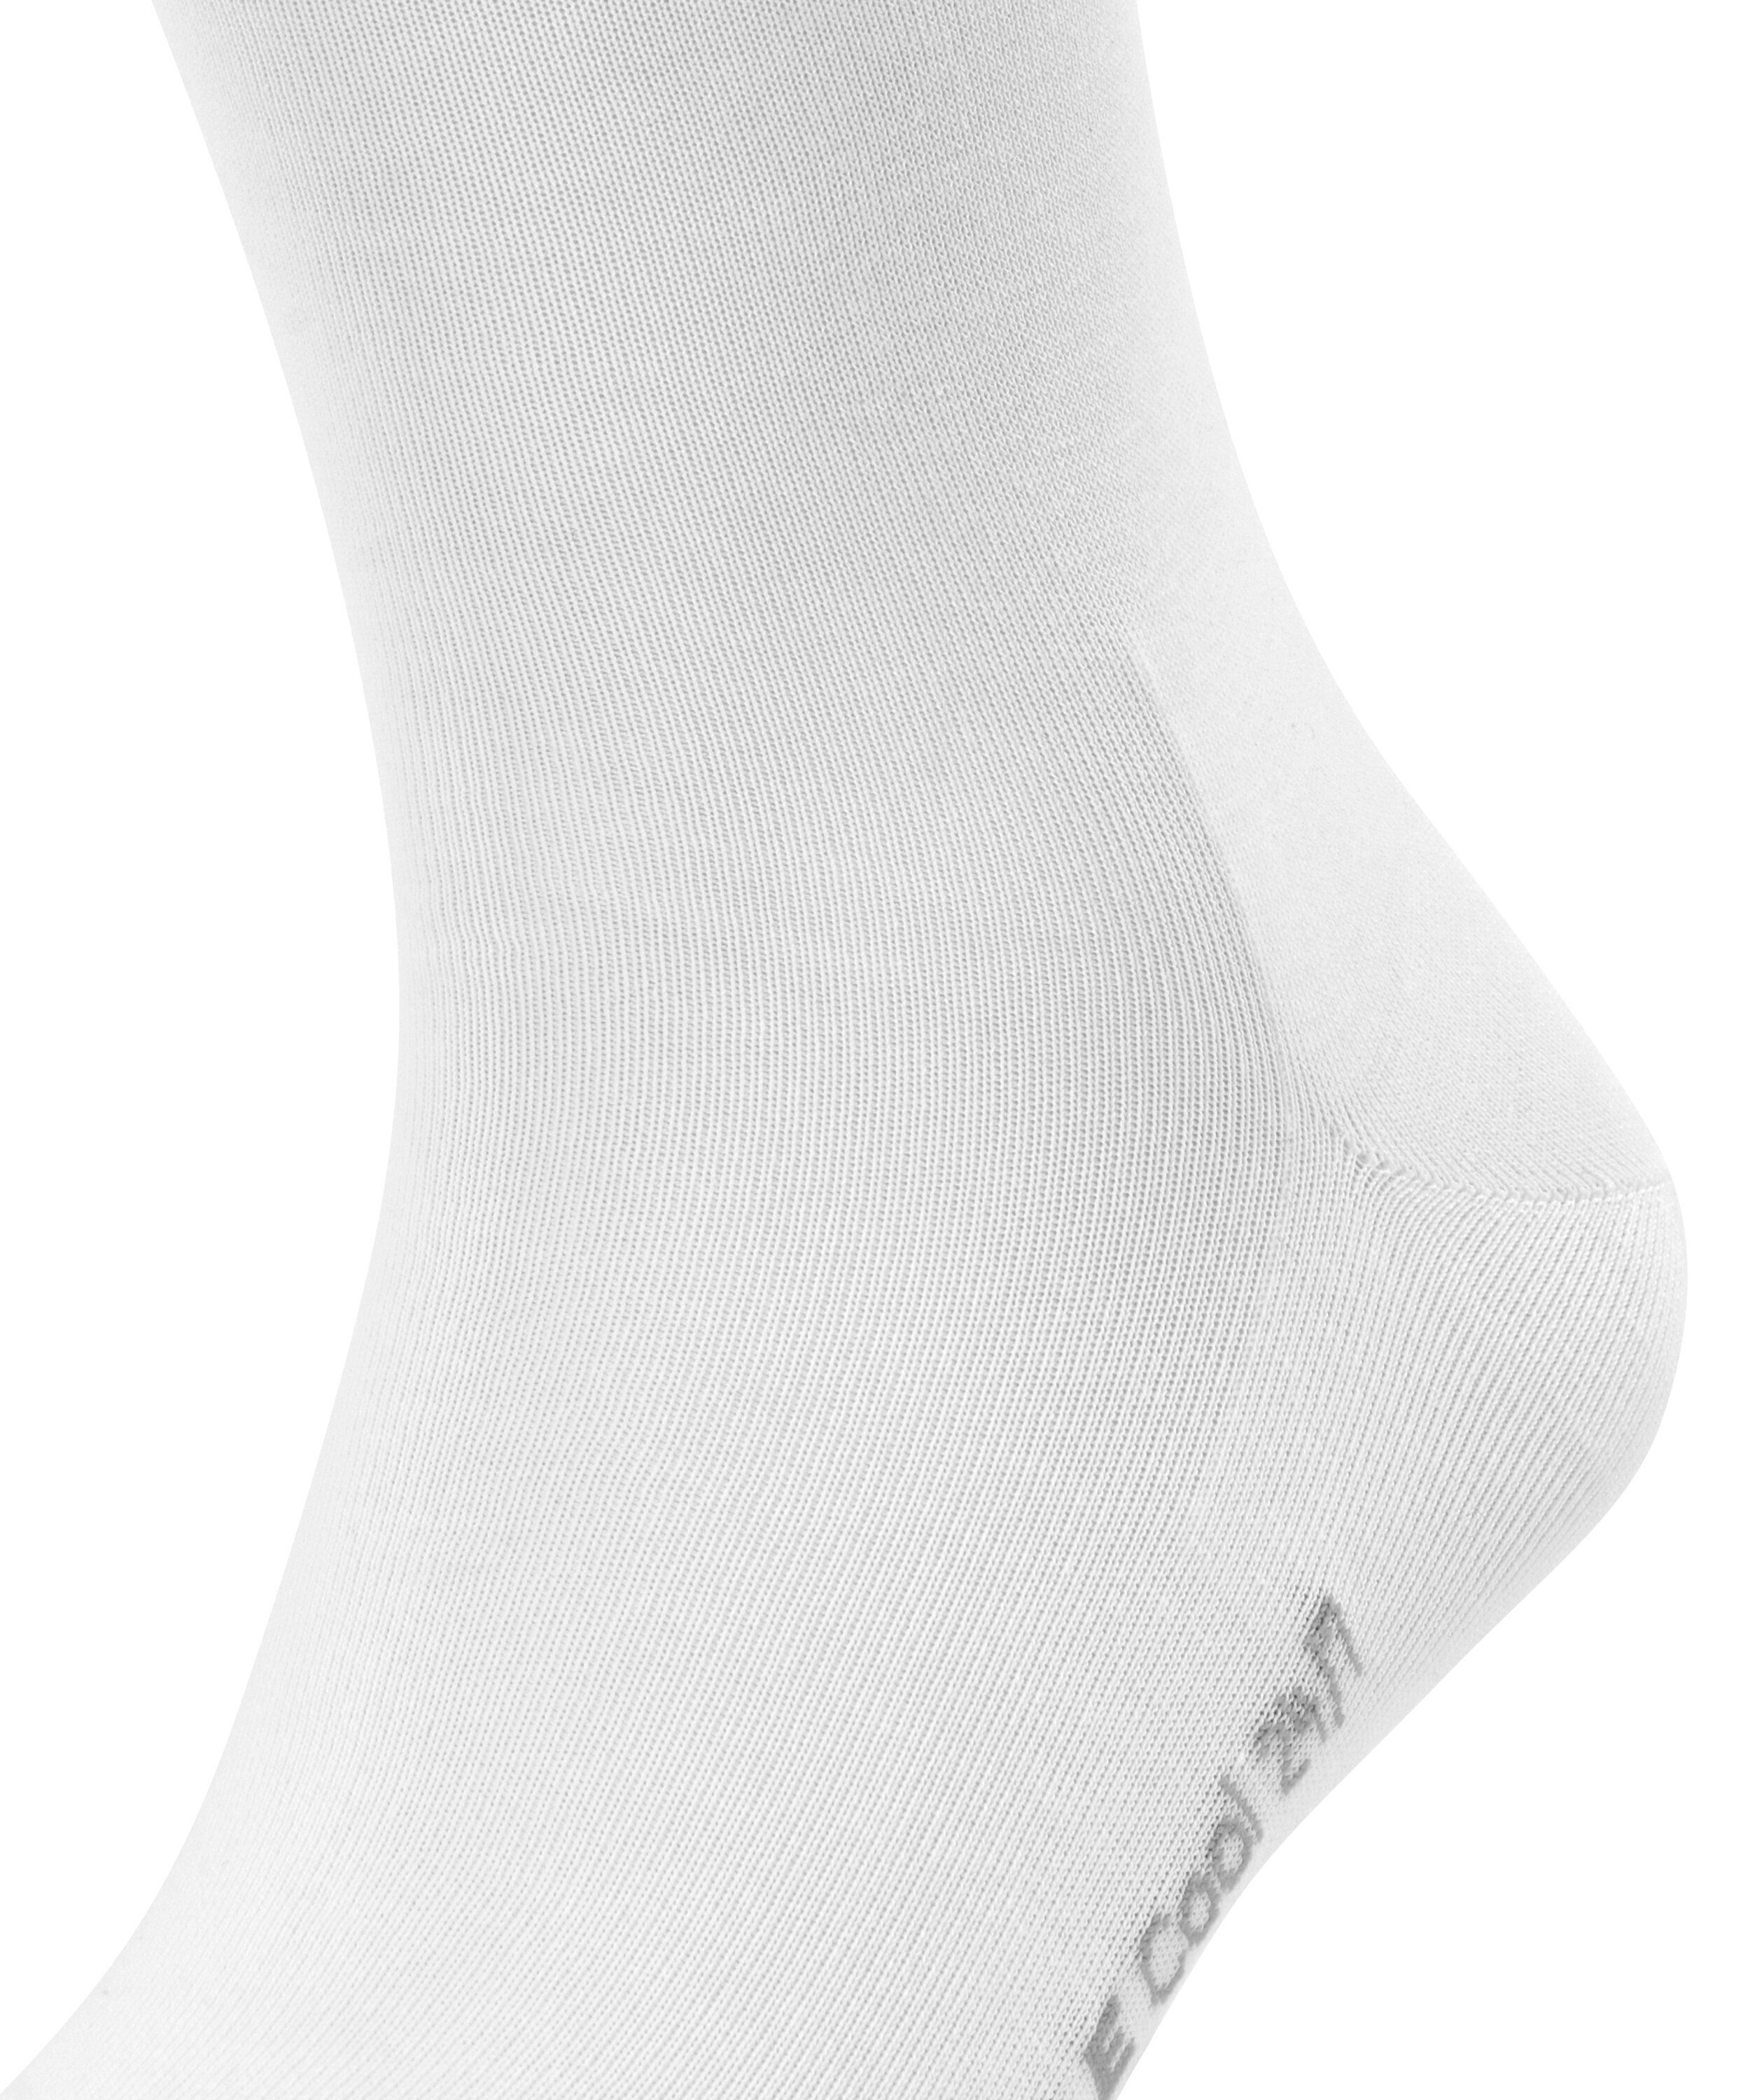 FALKE Socken Cool white 24/7 (2000) (1-Paar)